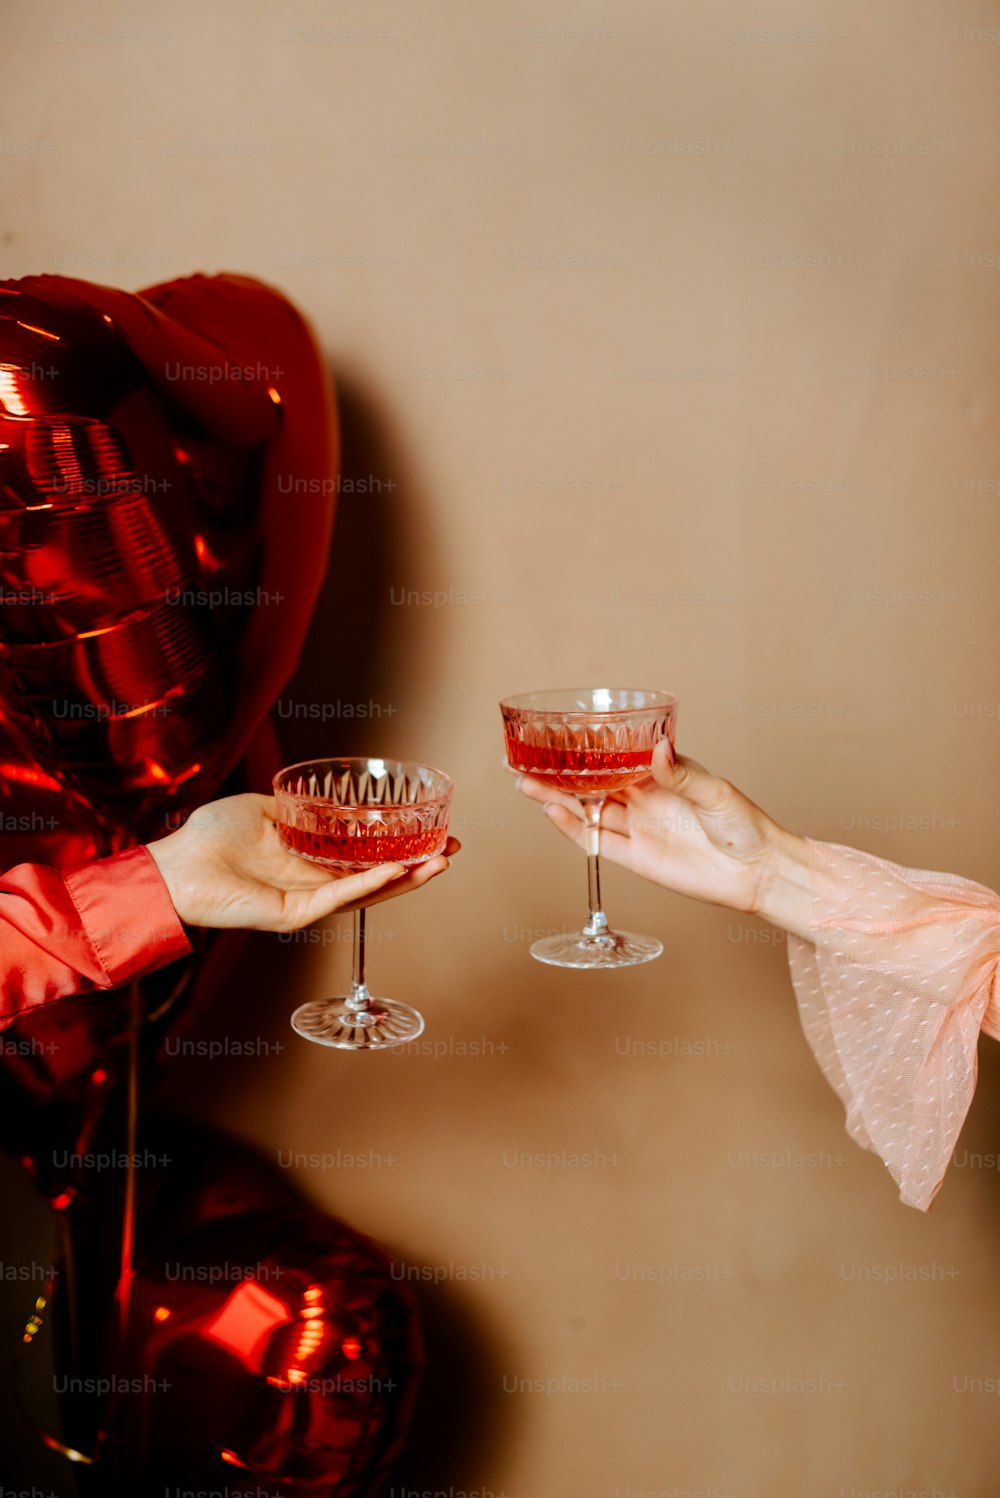 una persona che tiene un bicchiere di vino davanti a un palloncino